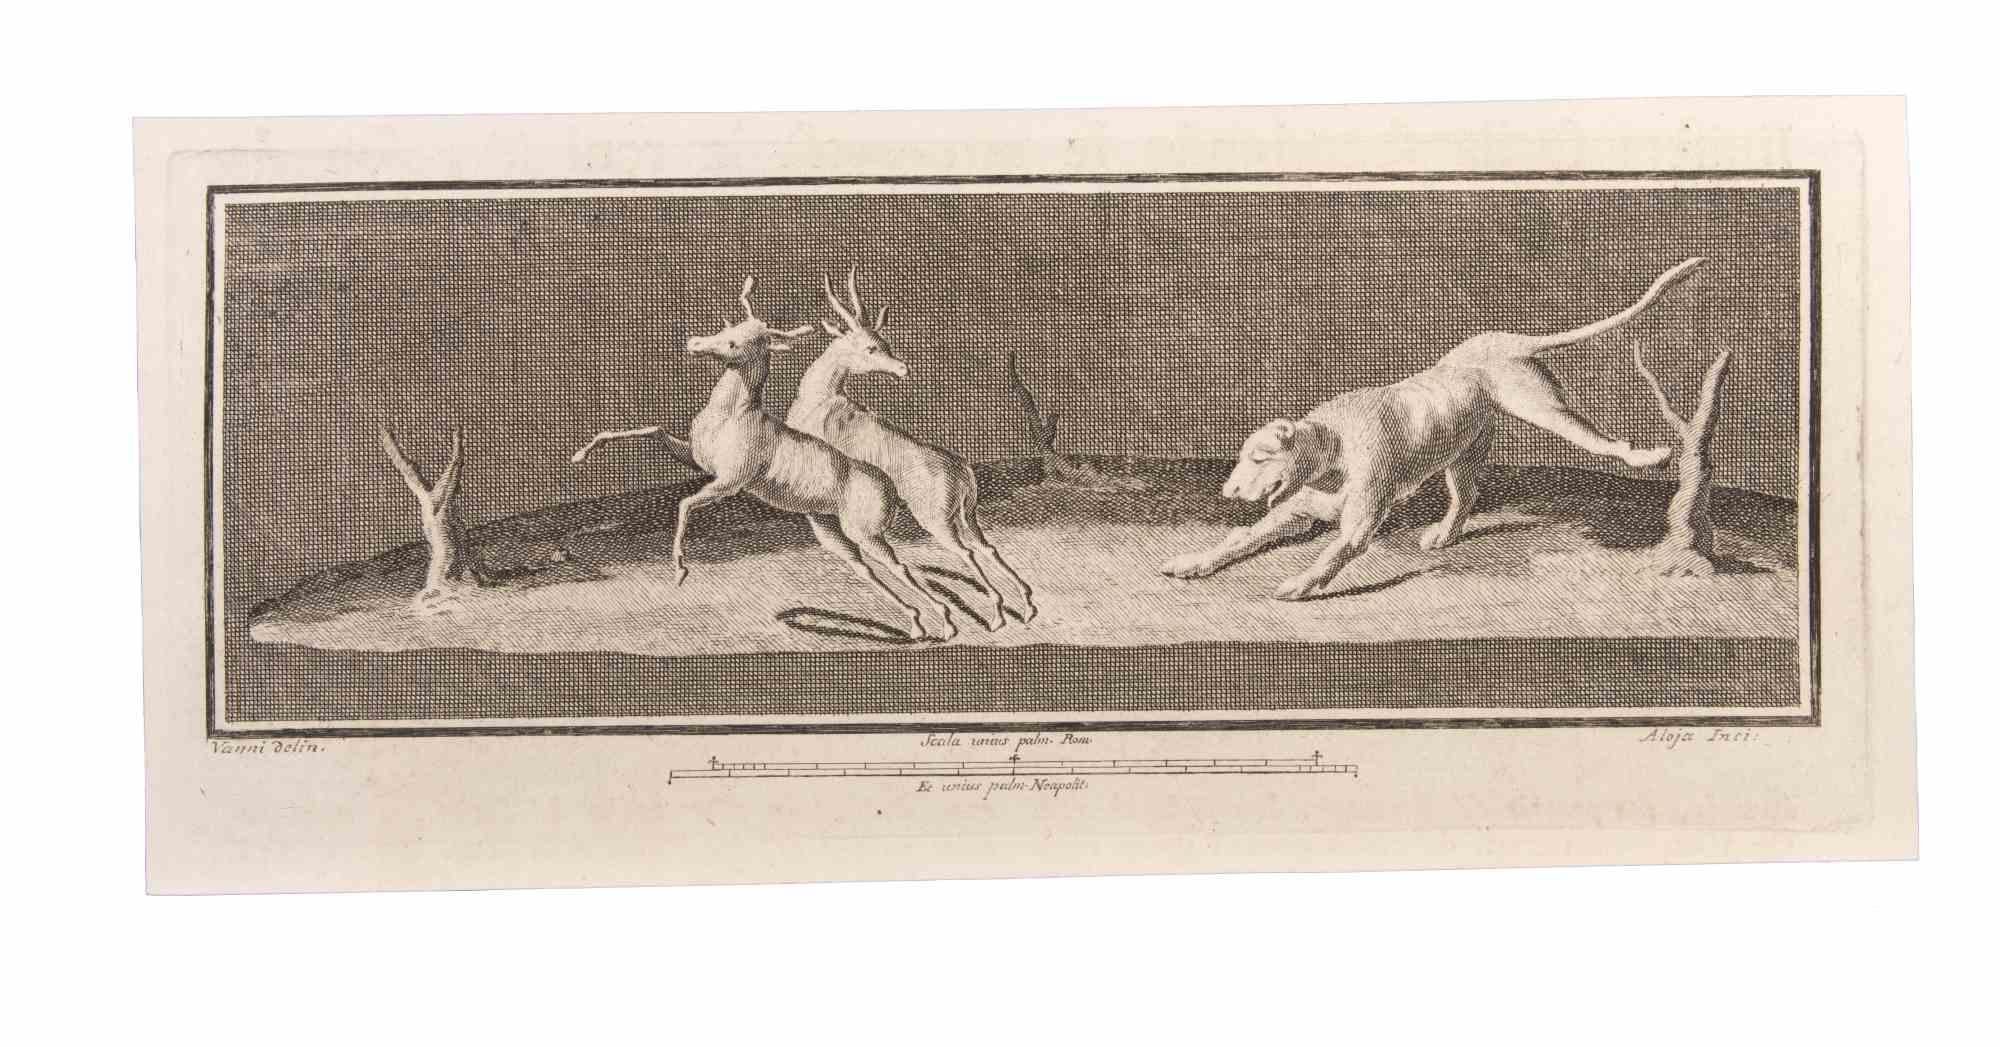 Decoration With Animals ist eine Radierung realisiert von  Luigi Aloja (1783-1837).

Die Radierung gehört zu der Druckserie "Antiquities of Herculaneum Exposed" (Originaltitel: "Le Antichità di Ercolano Esposte"), einem achtbändigen Band mit Stichen